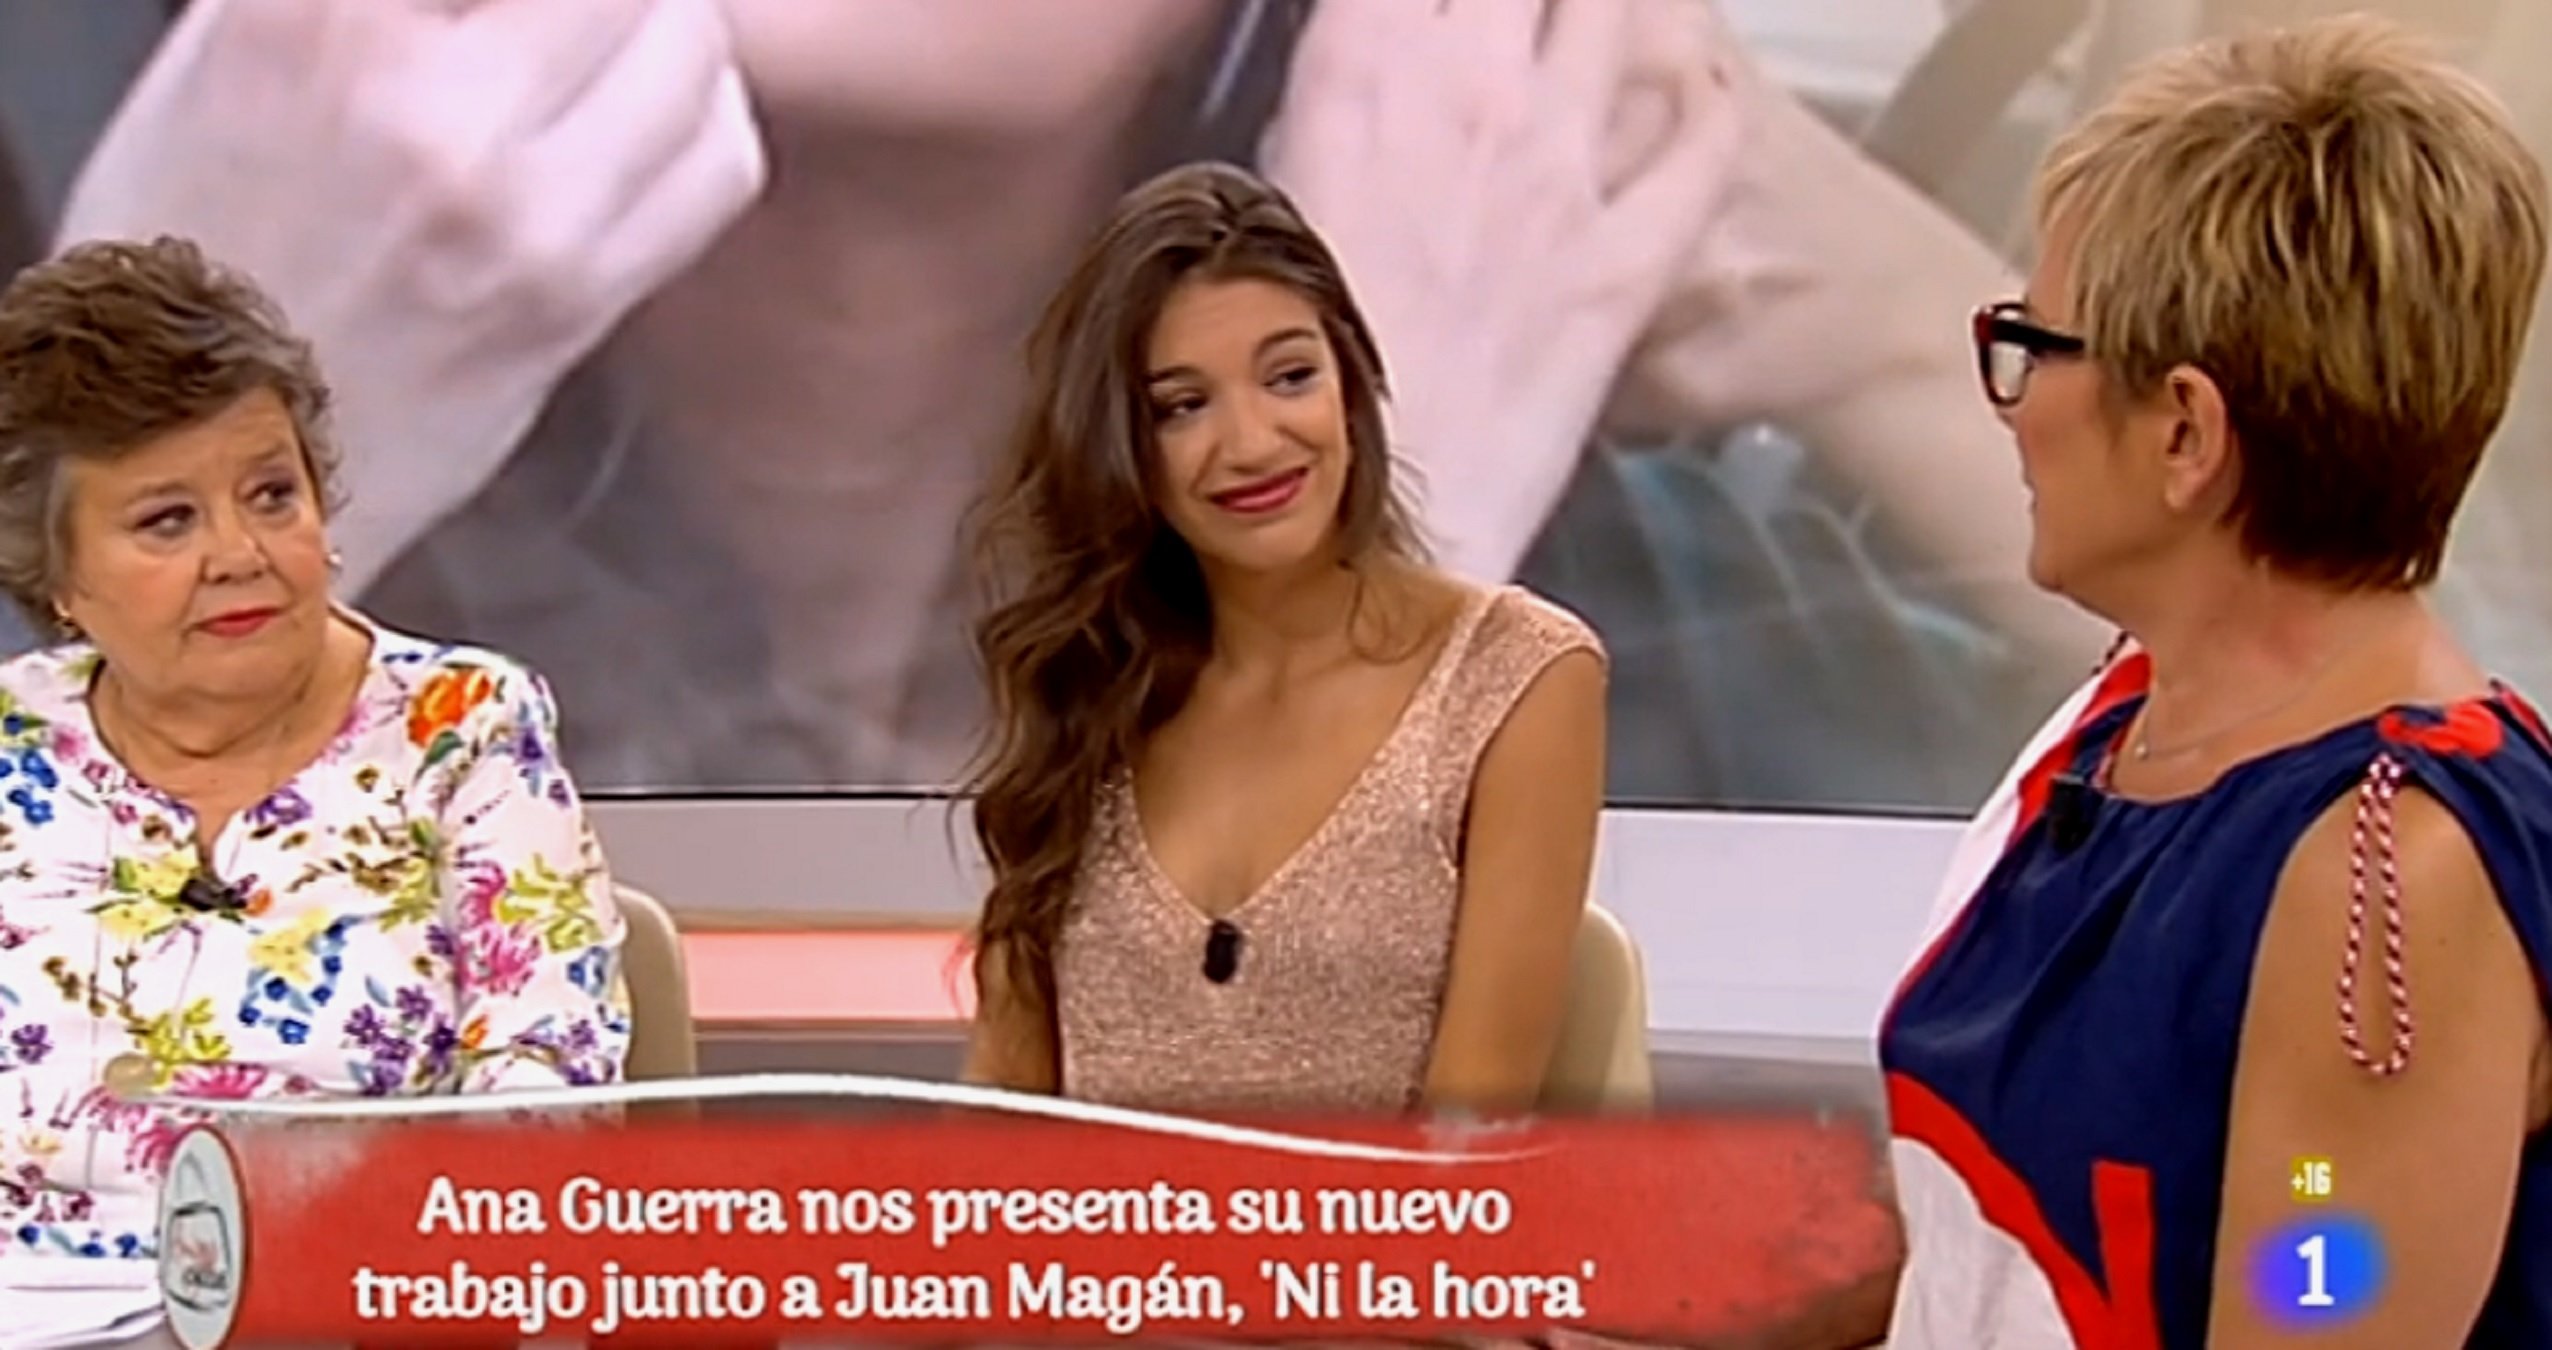 TVE s’ha de disculpar amb Ana Guerra després d’humiliar-la en directe